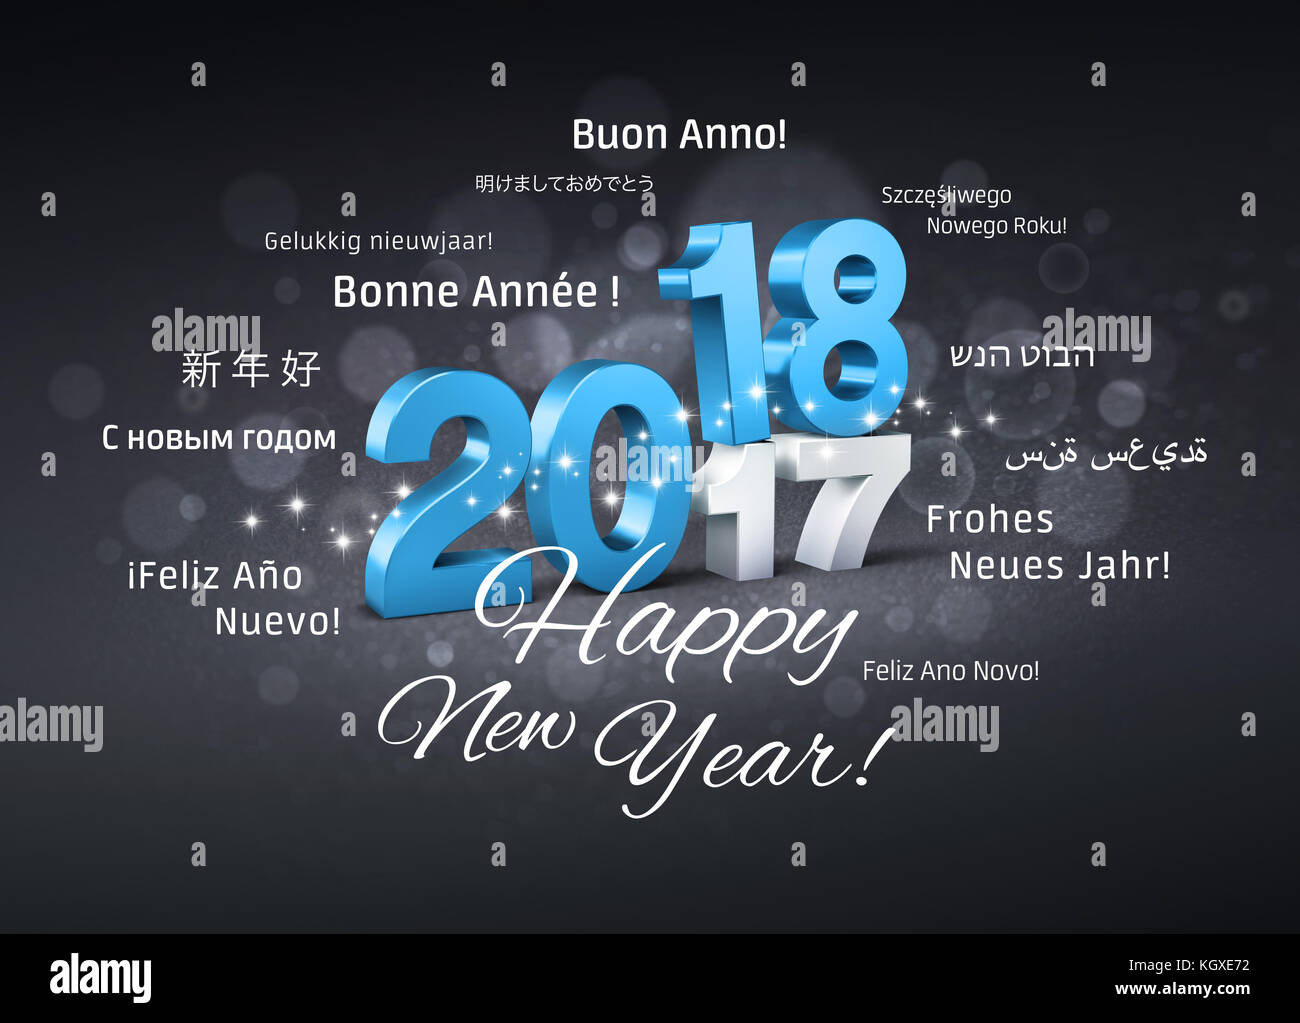 Data blu 2018 sopra 2017 e felice anno nuovo i messaggi di saluto in più lingue su una festosa sfondo nero - 3d illustrazione Foto Stock